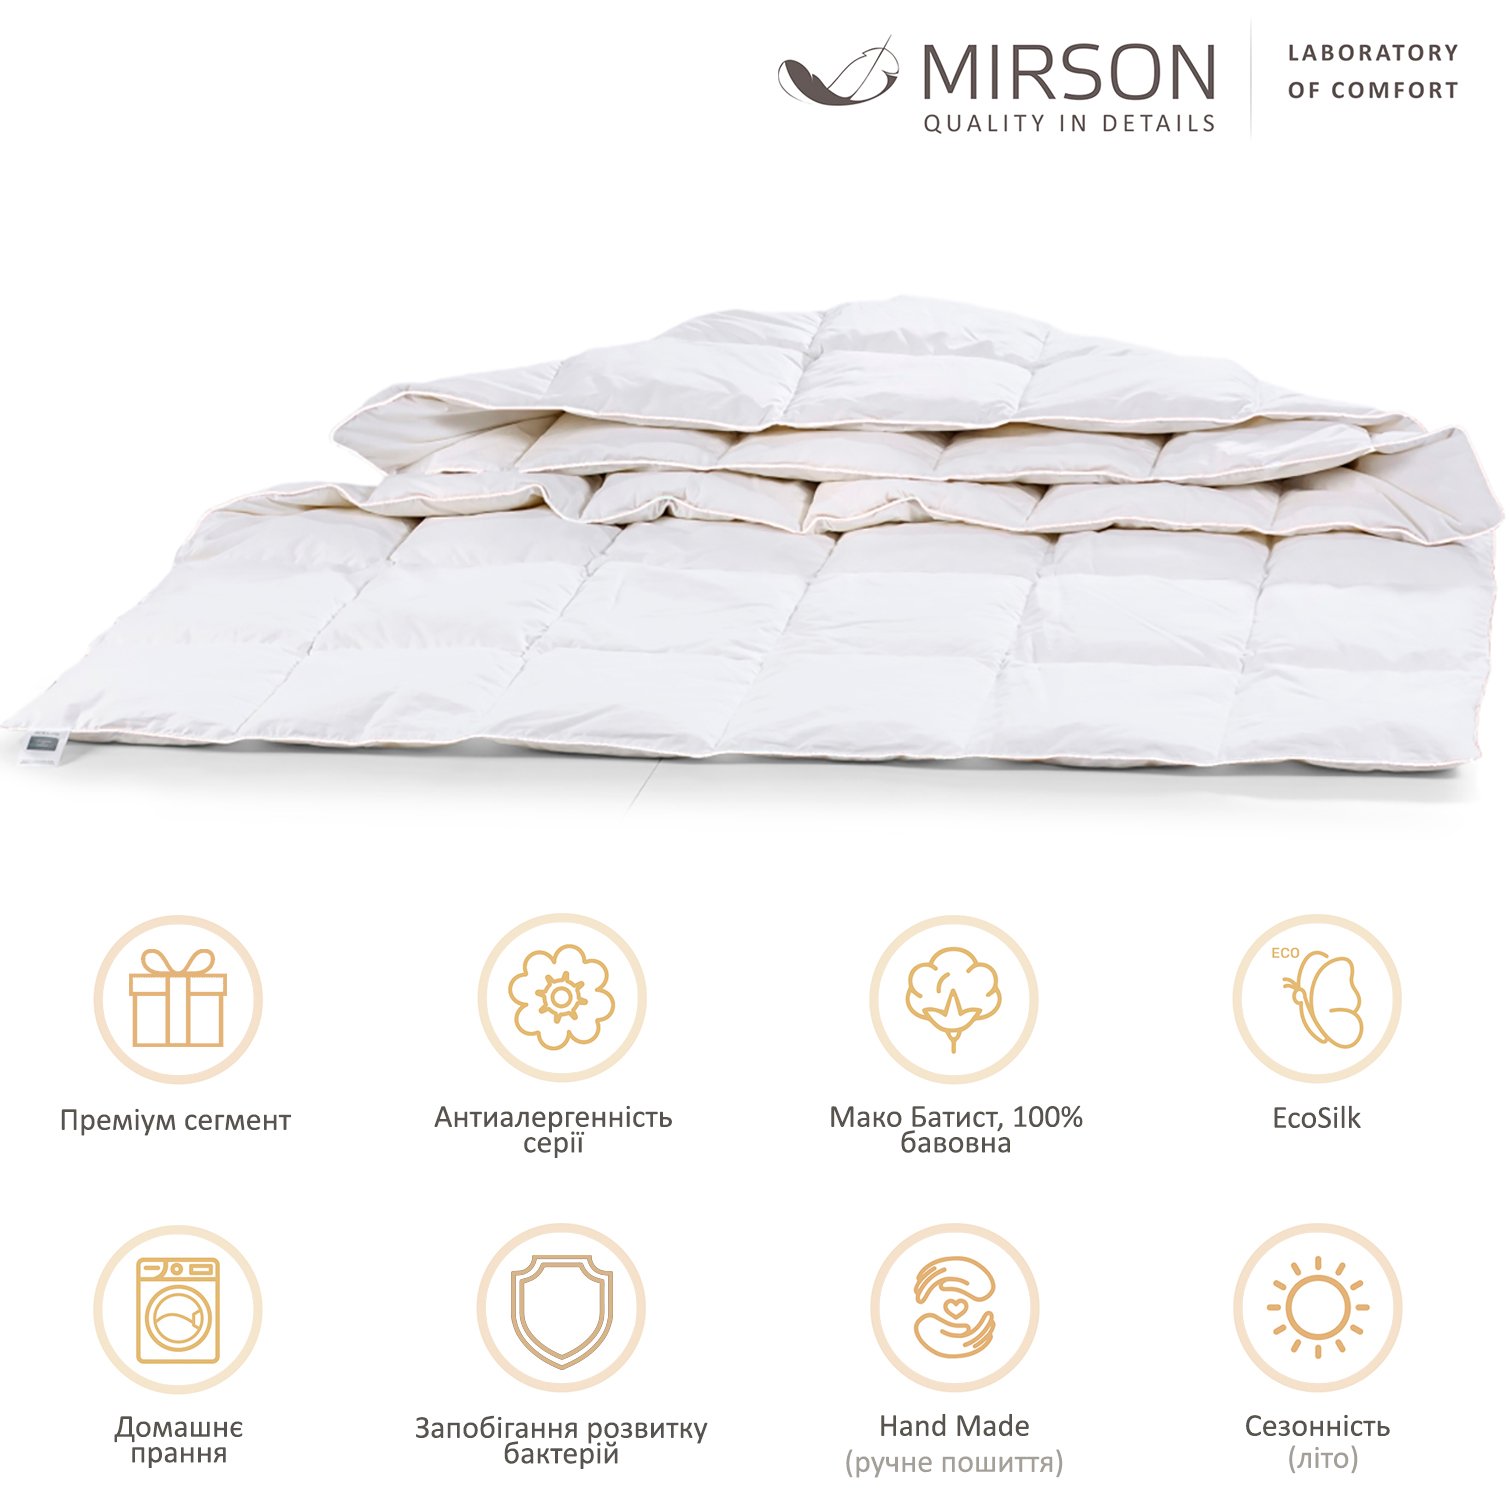 Одеяло антиаллергенное MirSon Luxury Exclusive EcoSilk №1315, летнее, 110x140 см, белое (237054361) - фото 5